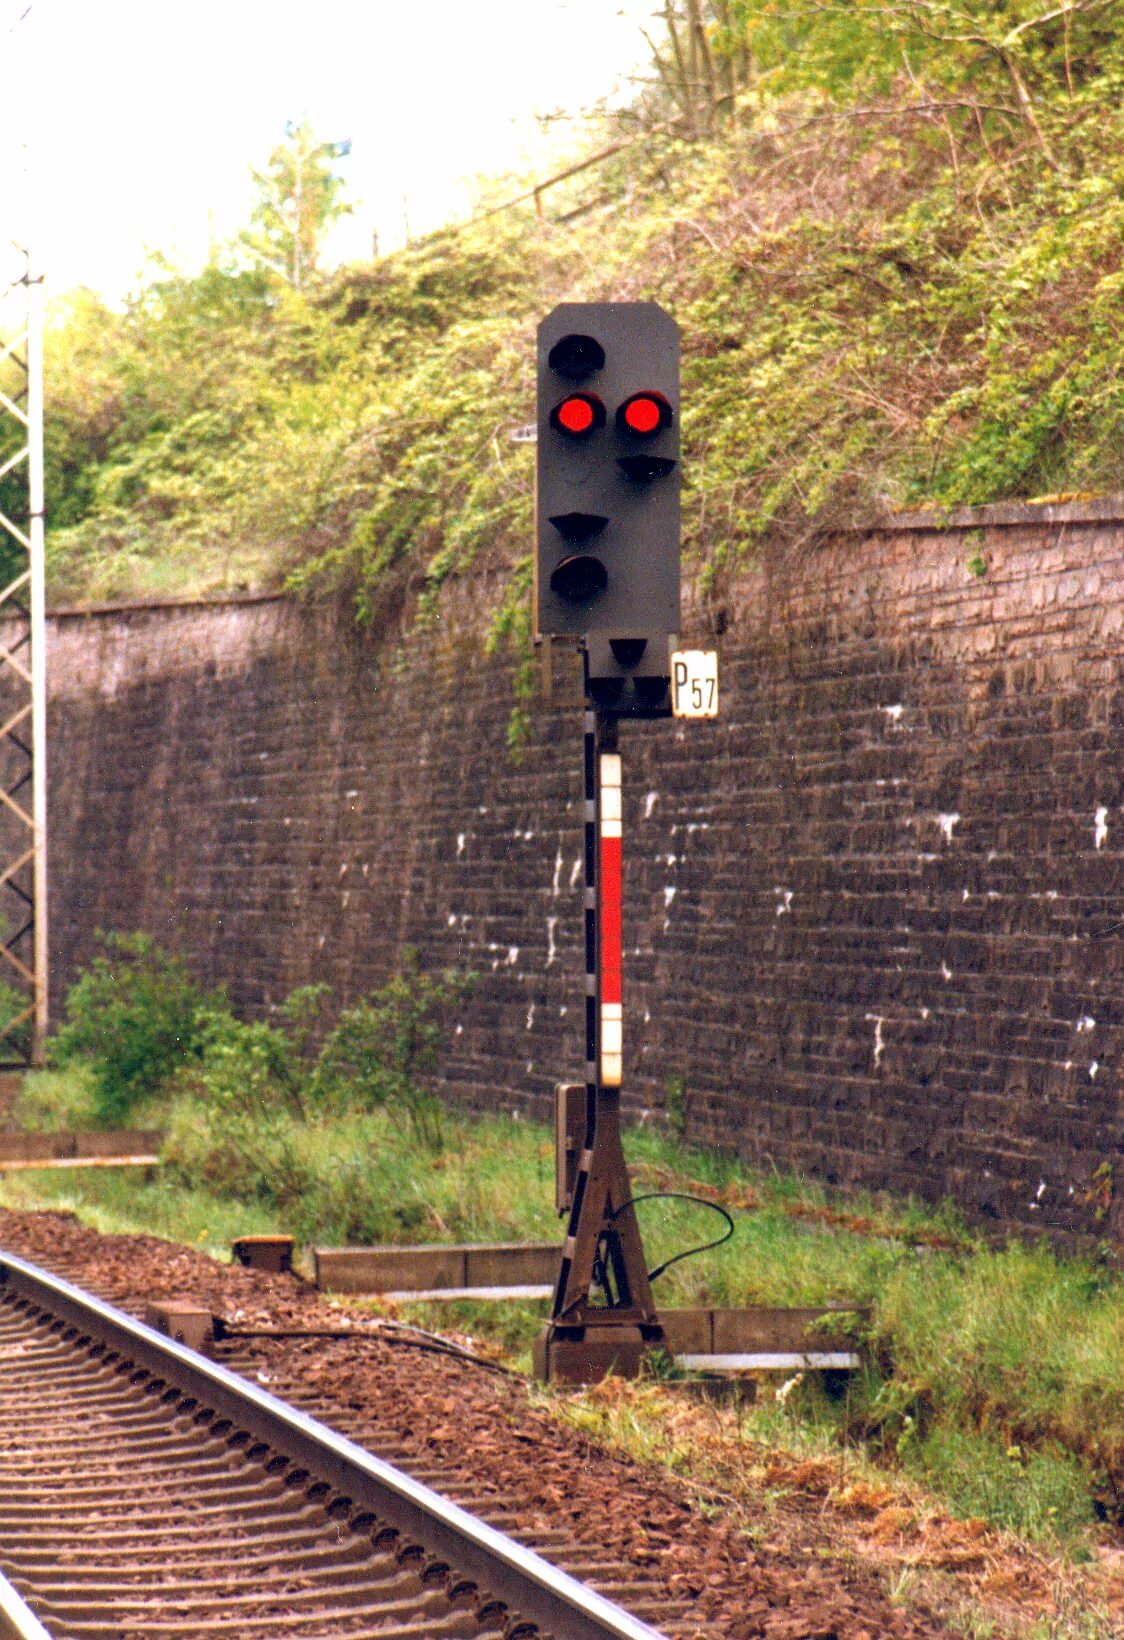 Сигнализация на железной дороге. Железнодорожная сигнализация. Немецкая Железнодорожная сигнализация. Железнодорожная сигнализация в Германии. Железнодорожные сигналы.